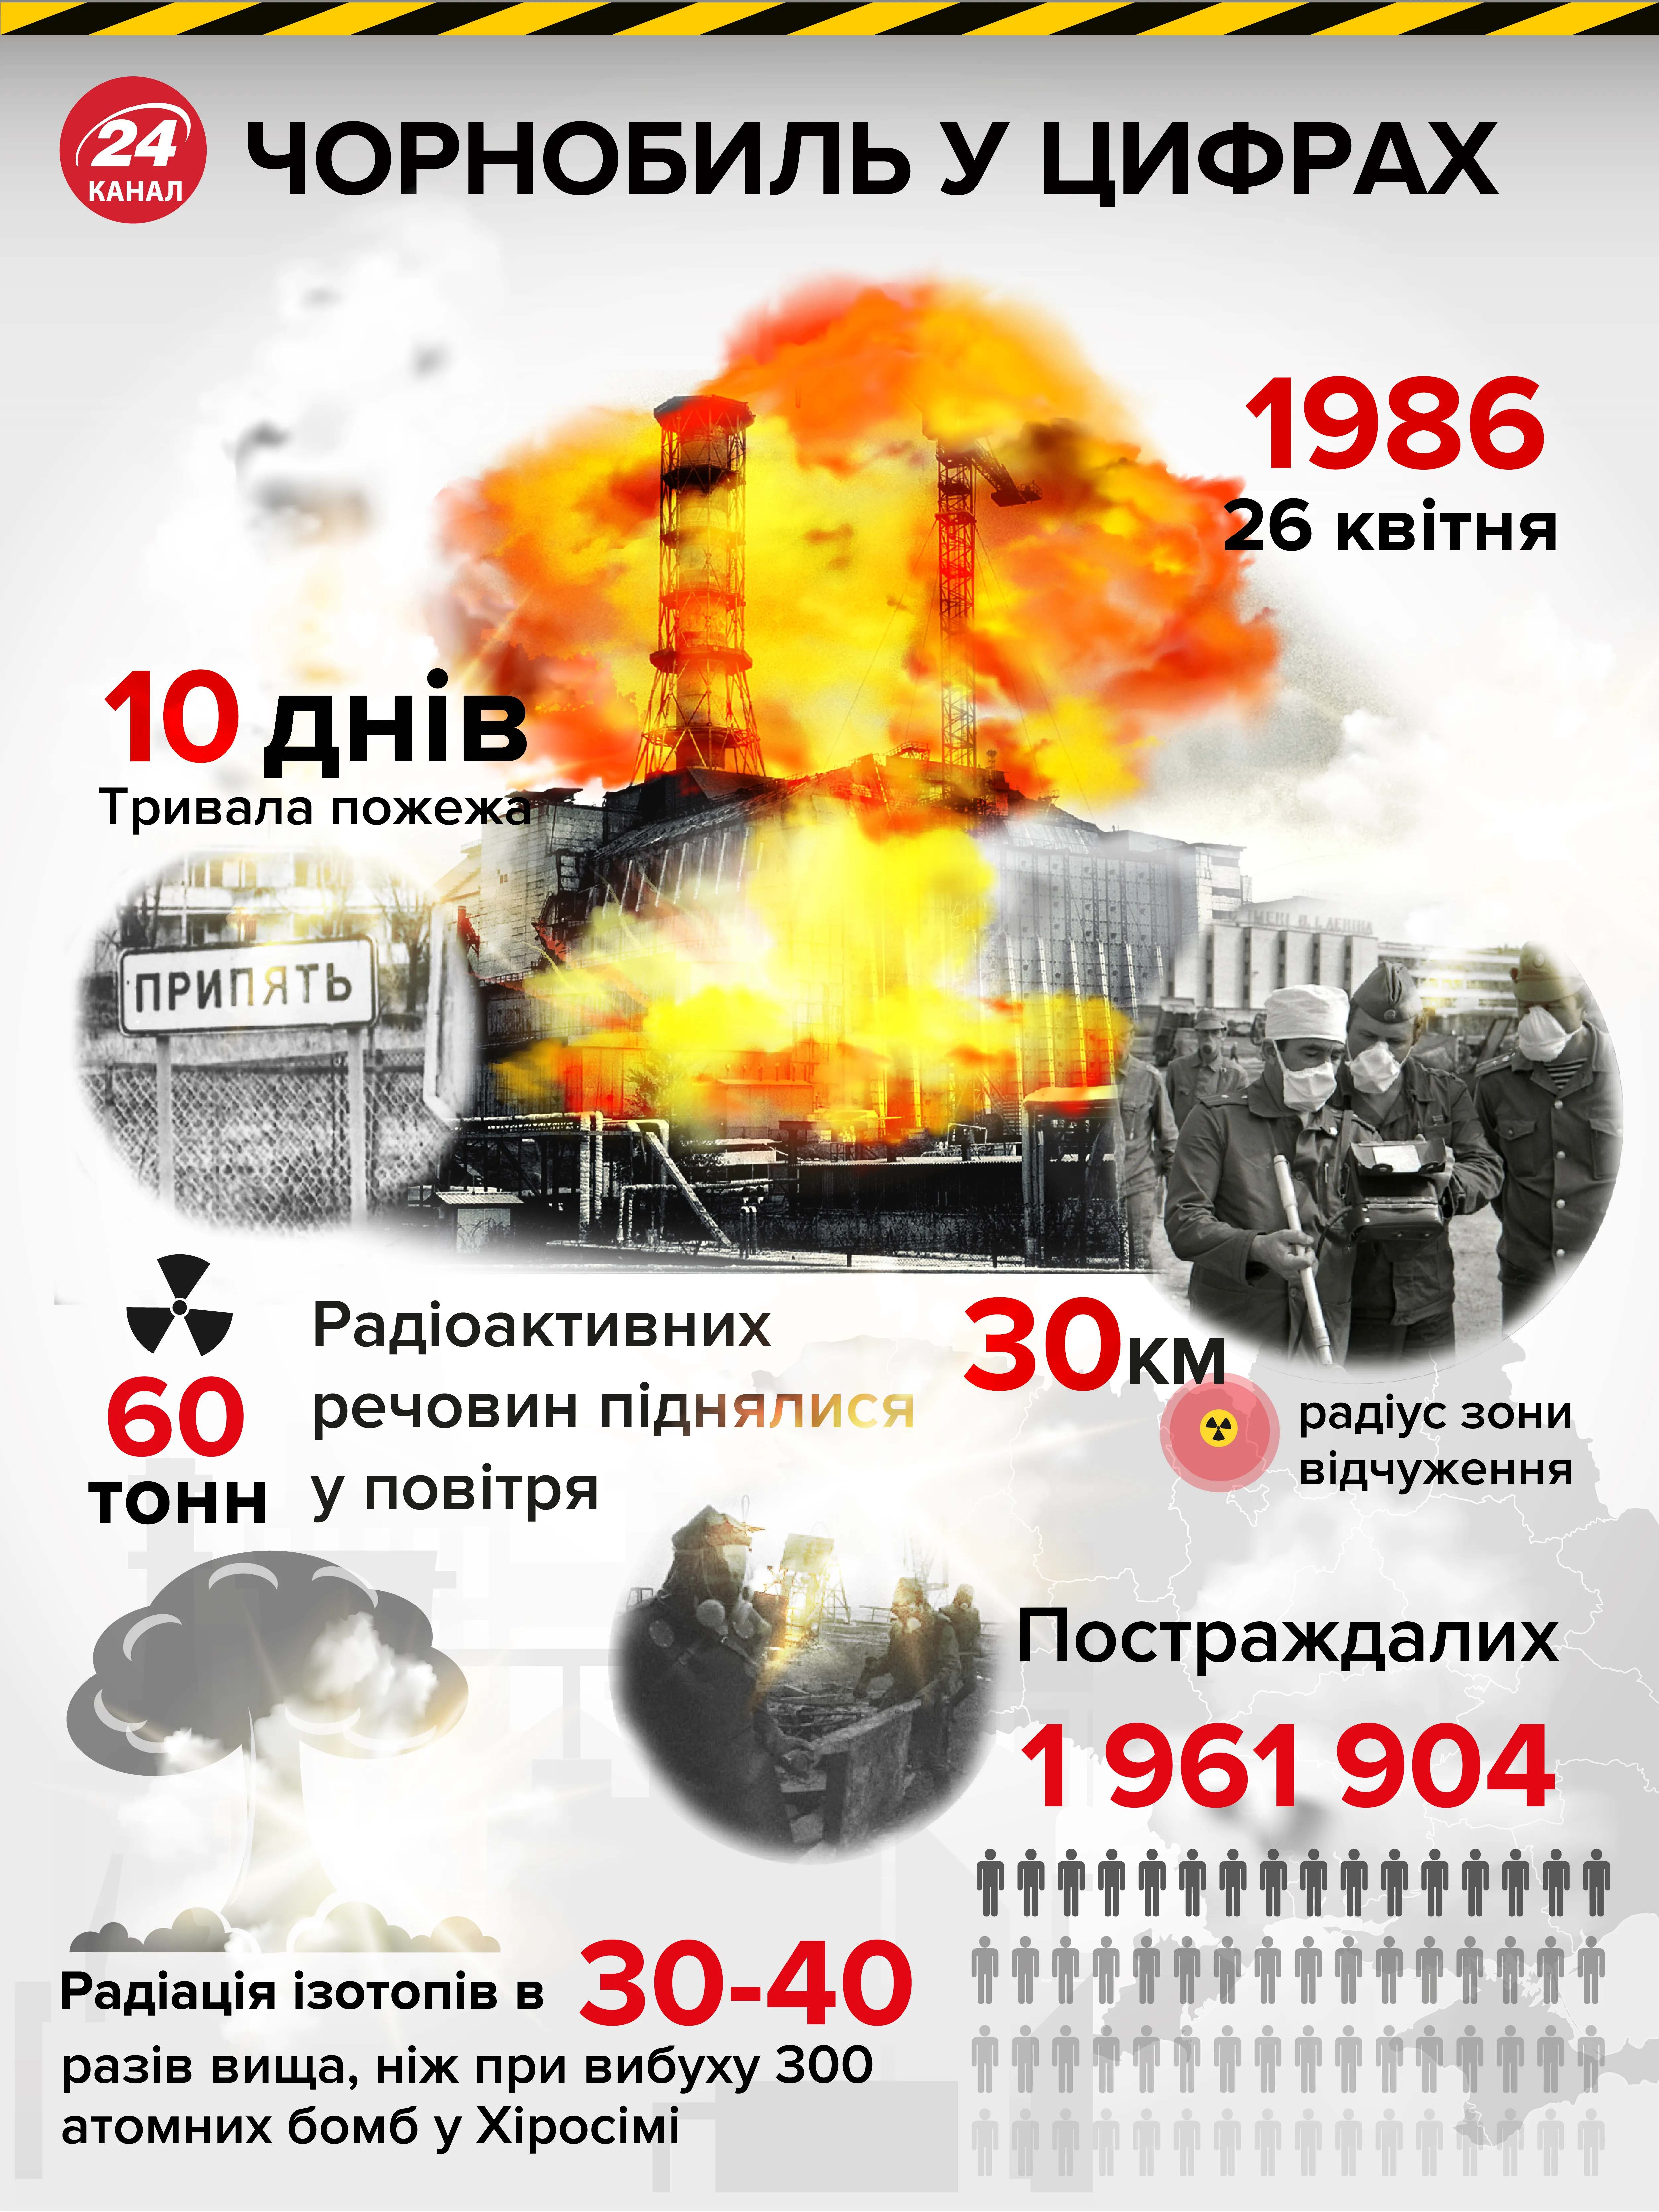 Чорнобиль трагедія Прип'ять аварія на ЧАЕС